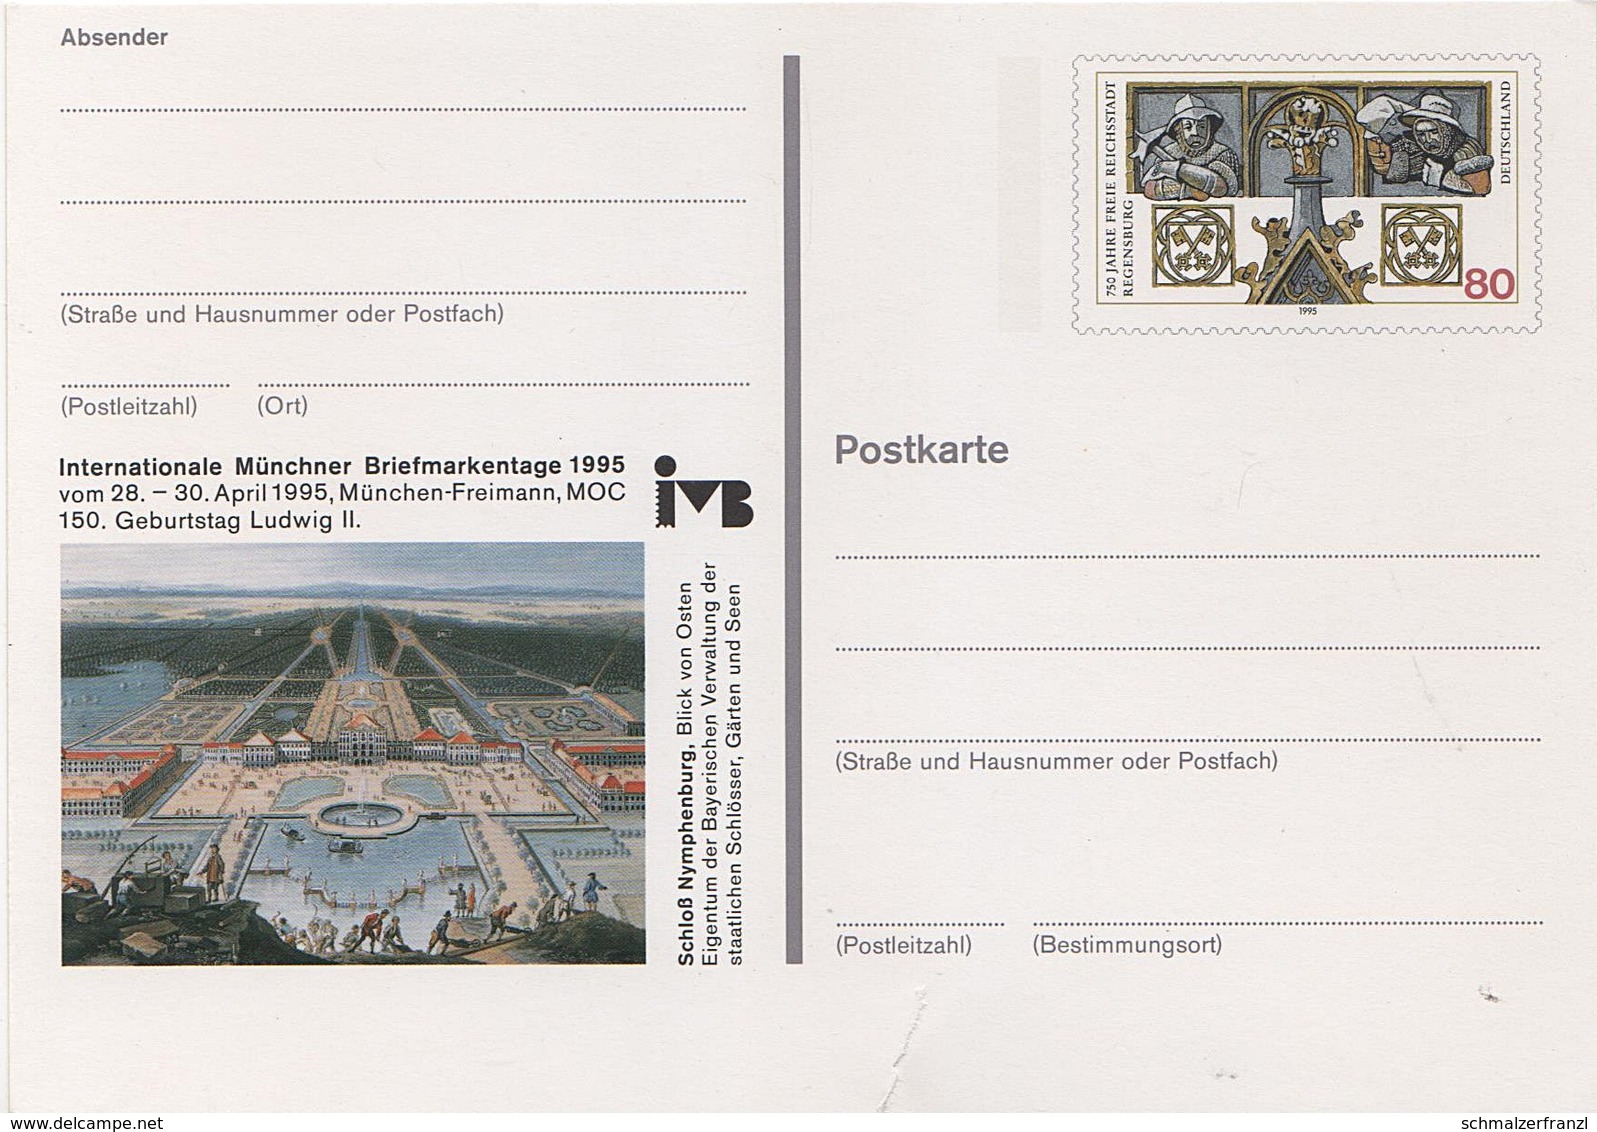 Postkarte Ganzsache Deutsche Bundespost Post Briefmarke 80 Pfennig DM Mark Internationale Briefmarkentage München 1995 - Postkarten - Ungebraucht